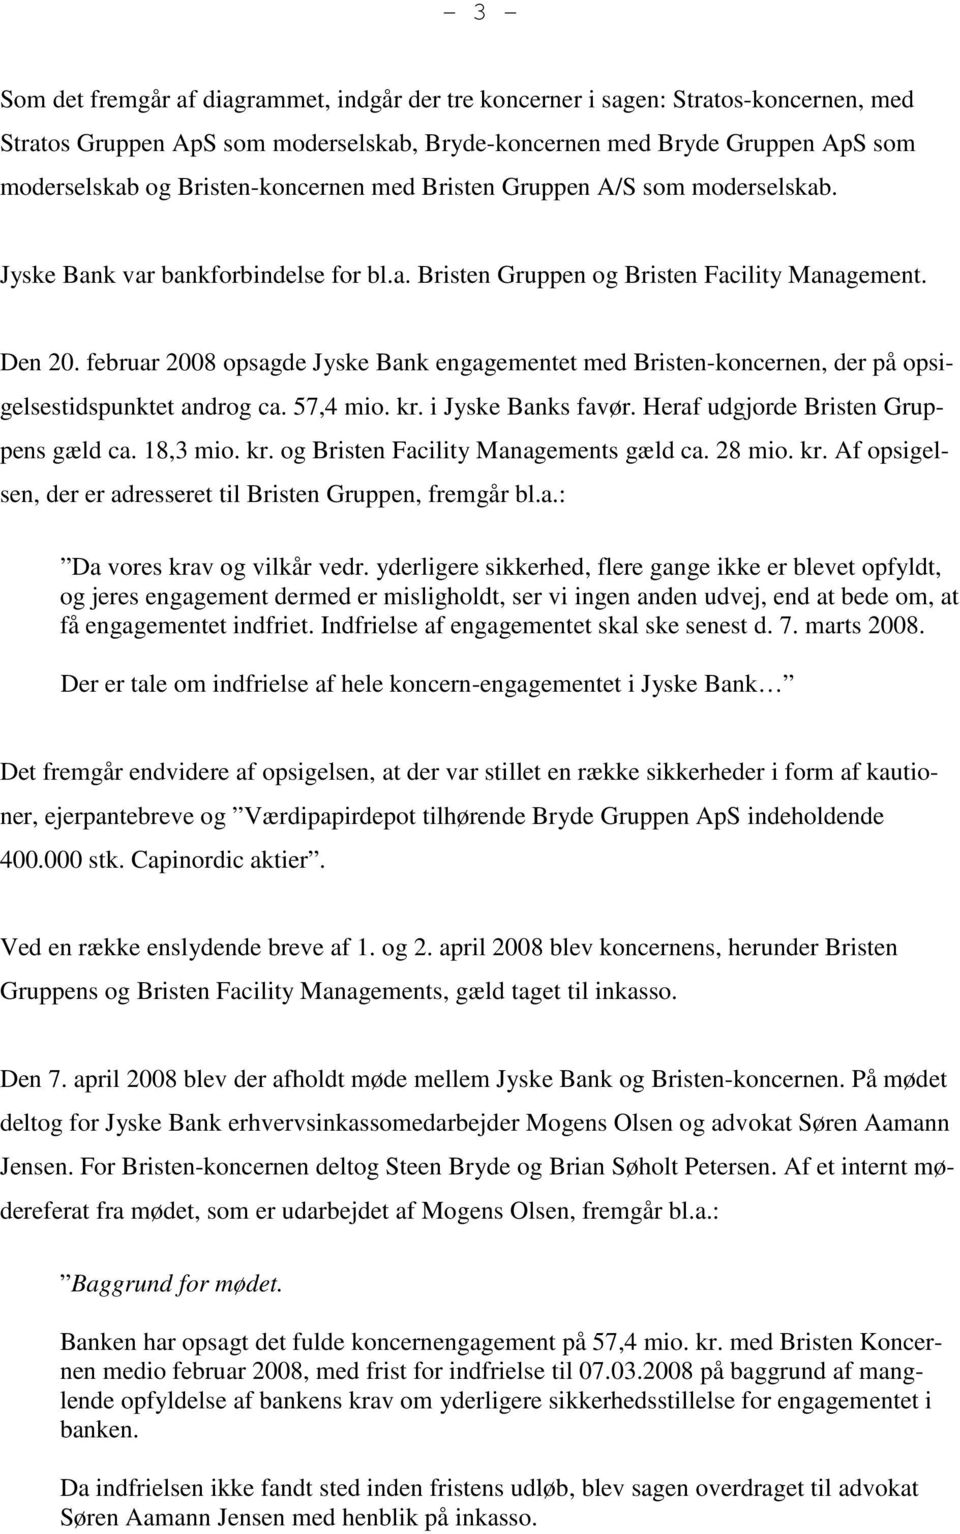 februar 2008 opsagde Jyske Bank engagementet med Bristen-koncernen, der på opsigelsestidspunktet androg ca. 57,4 mio. kr. i Jyske Banks favør. Heraf udgjorde Bristen Gruppens gæld ca. 18,3 mio. kr. og Bristen Facility Managements gæld ca.